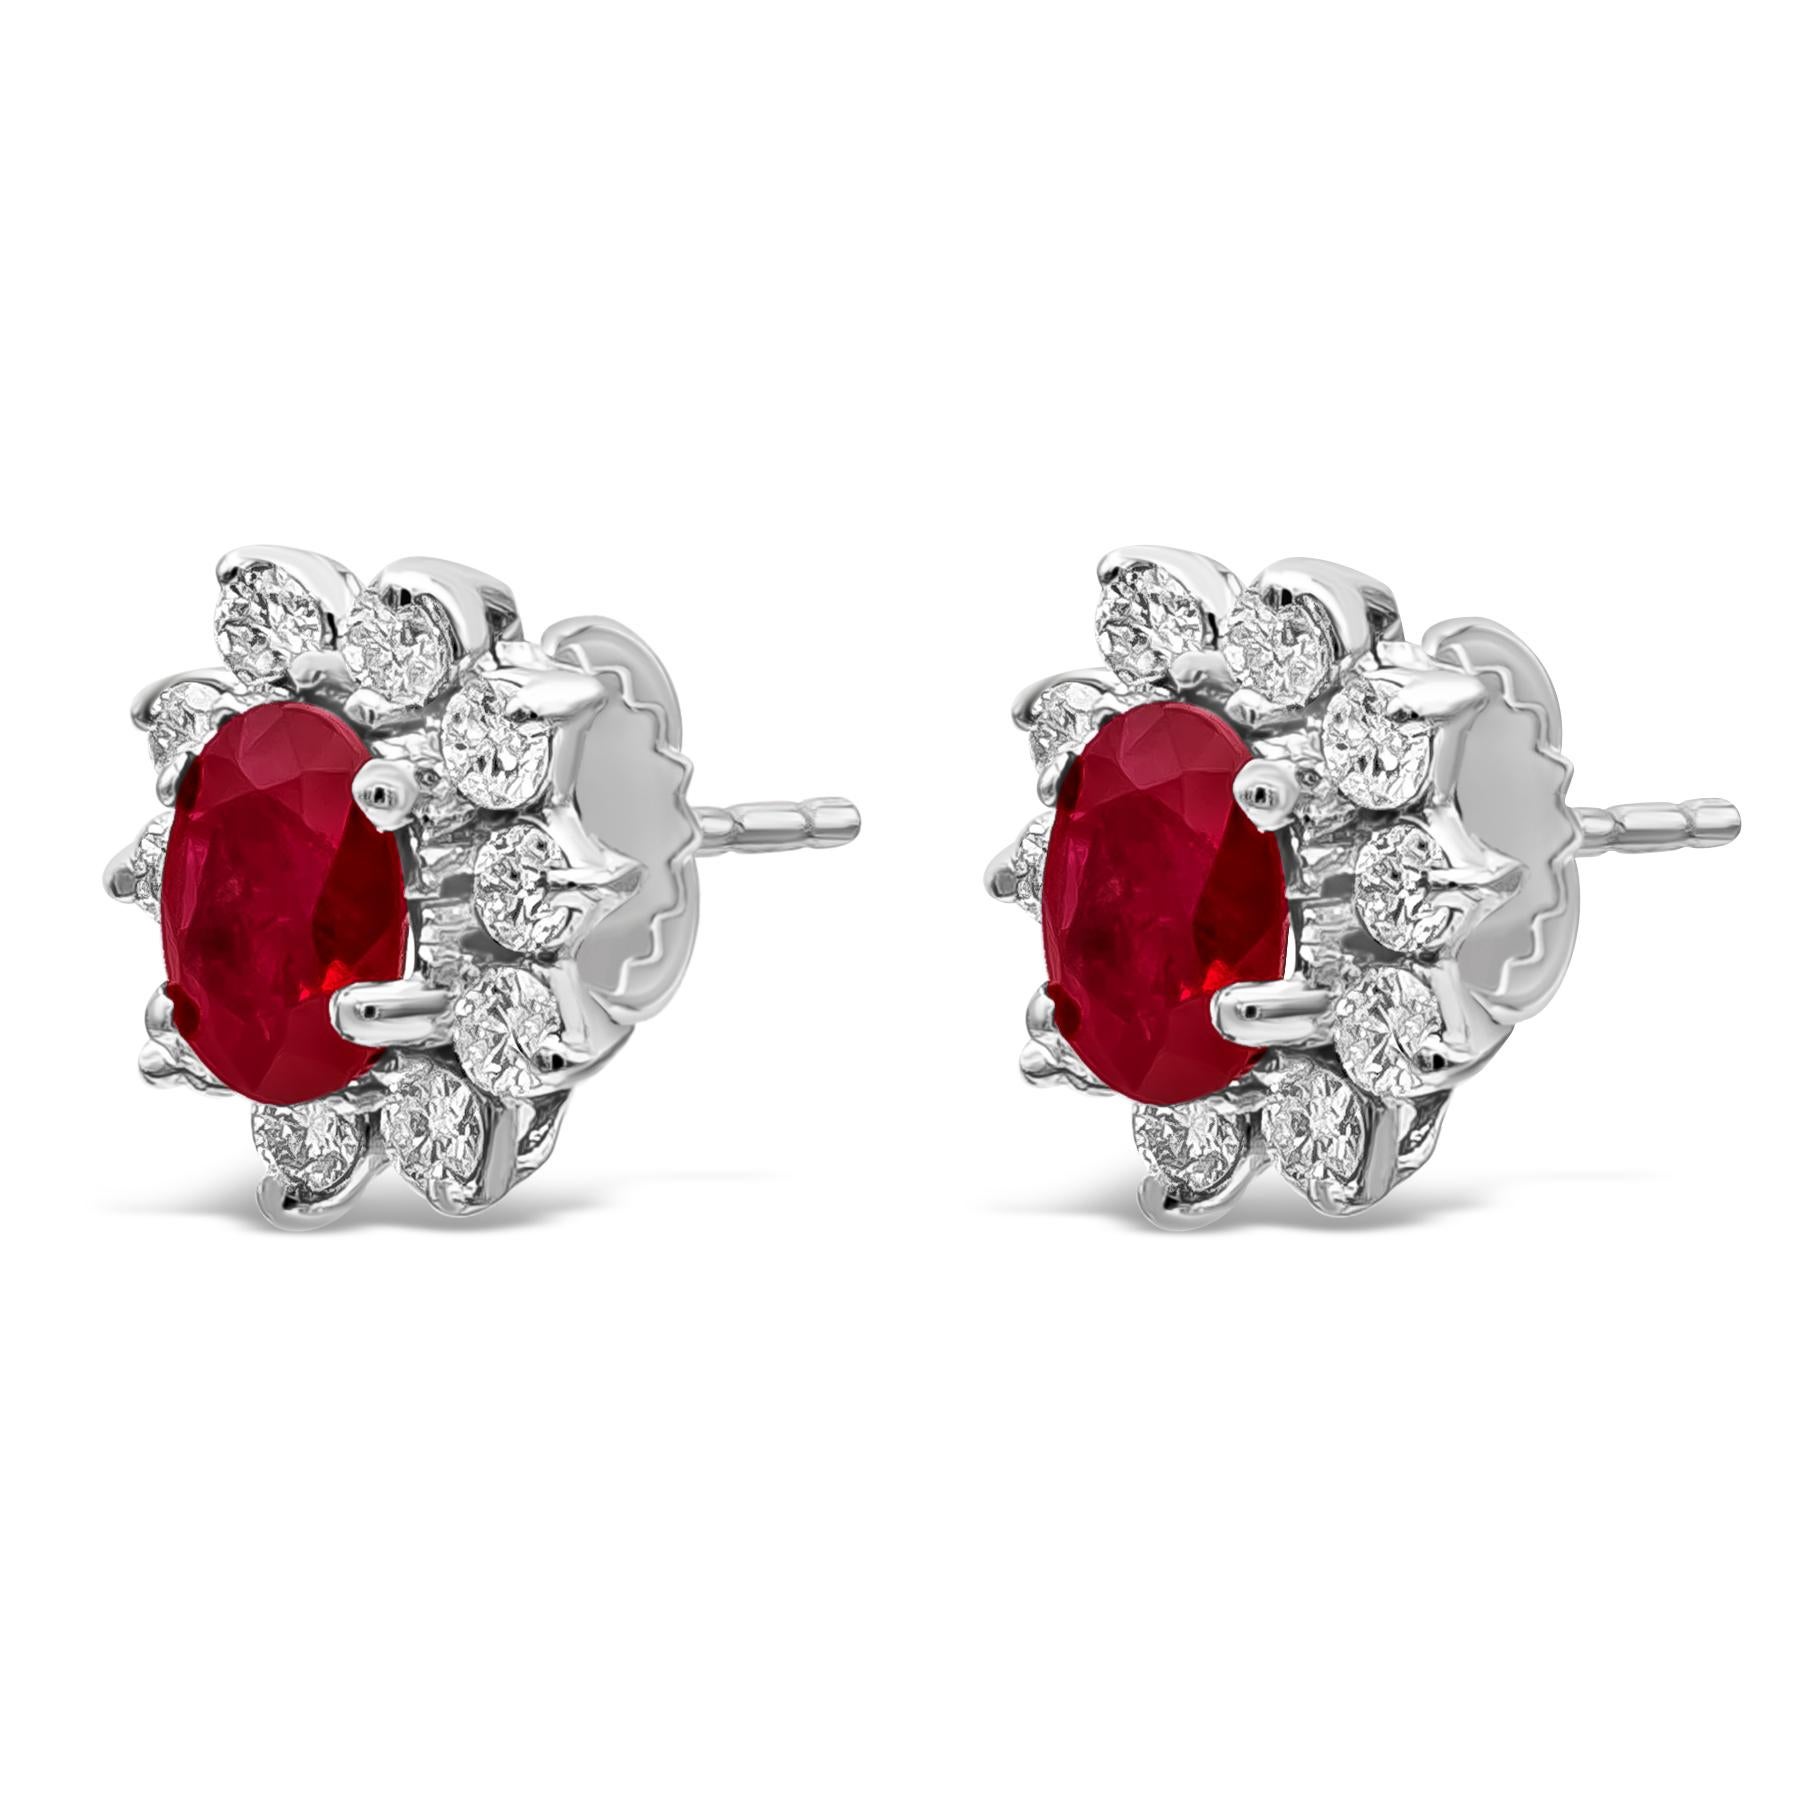 Ein klassisches Paar Ohrstecker mit Blumenmotiv und leuchtend roten Rubinen im Ovalschliff mit einem Gesamtgewicht von 2,64 Karat. Umgeben von einer einzigen Reihe runder Brillanten mit einem Gesamtgewicht von 1 Karat. Hergestellt mit 18K